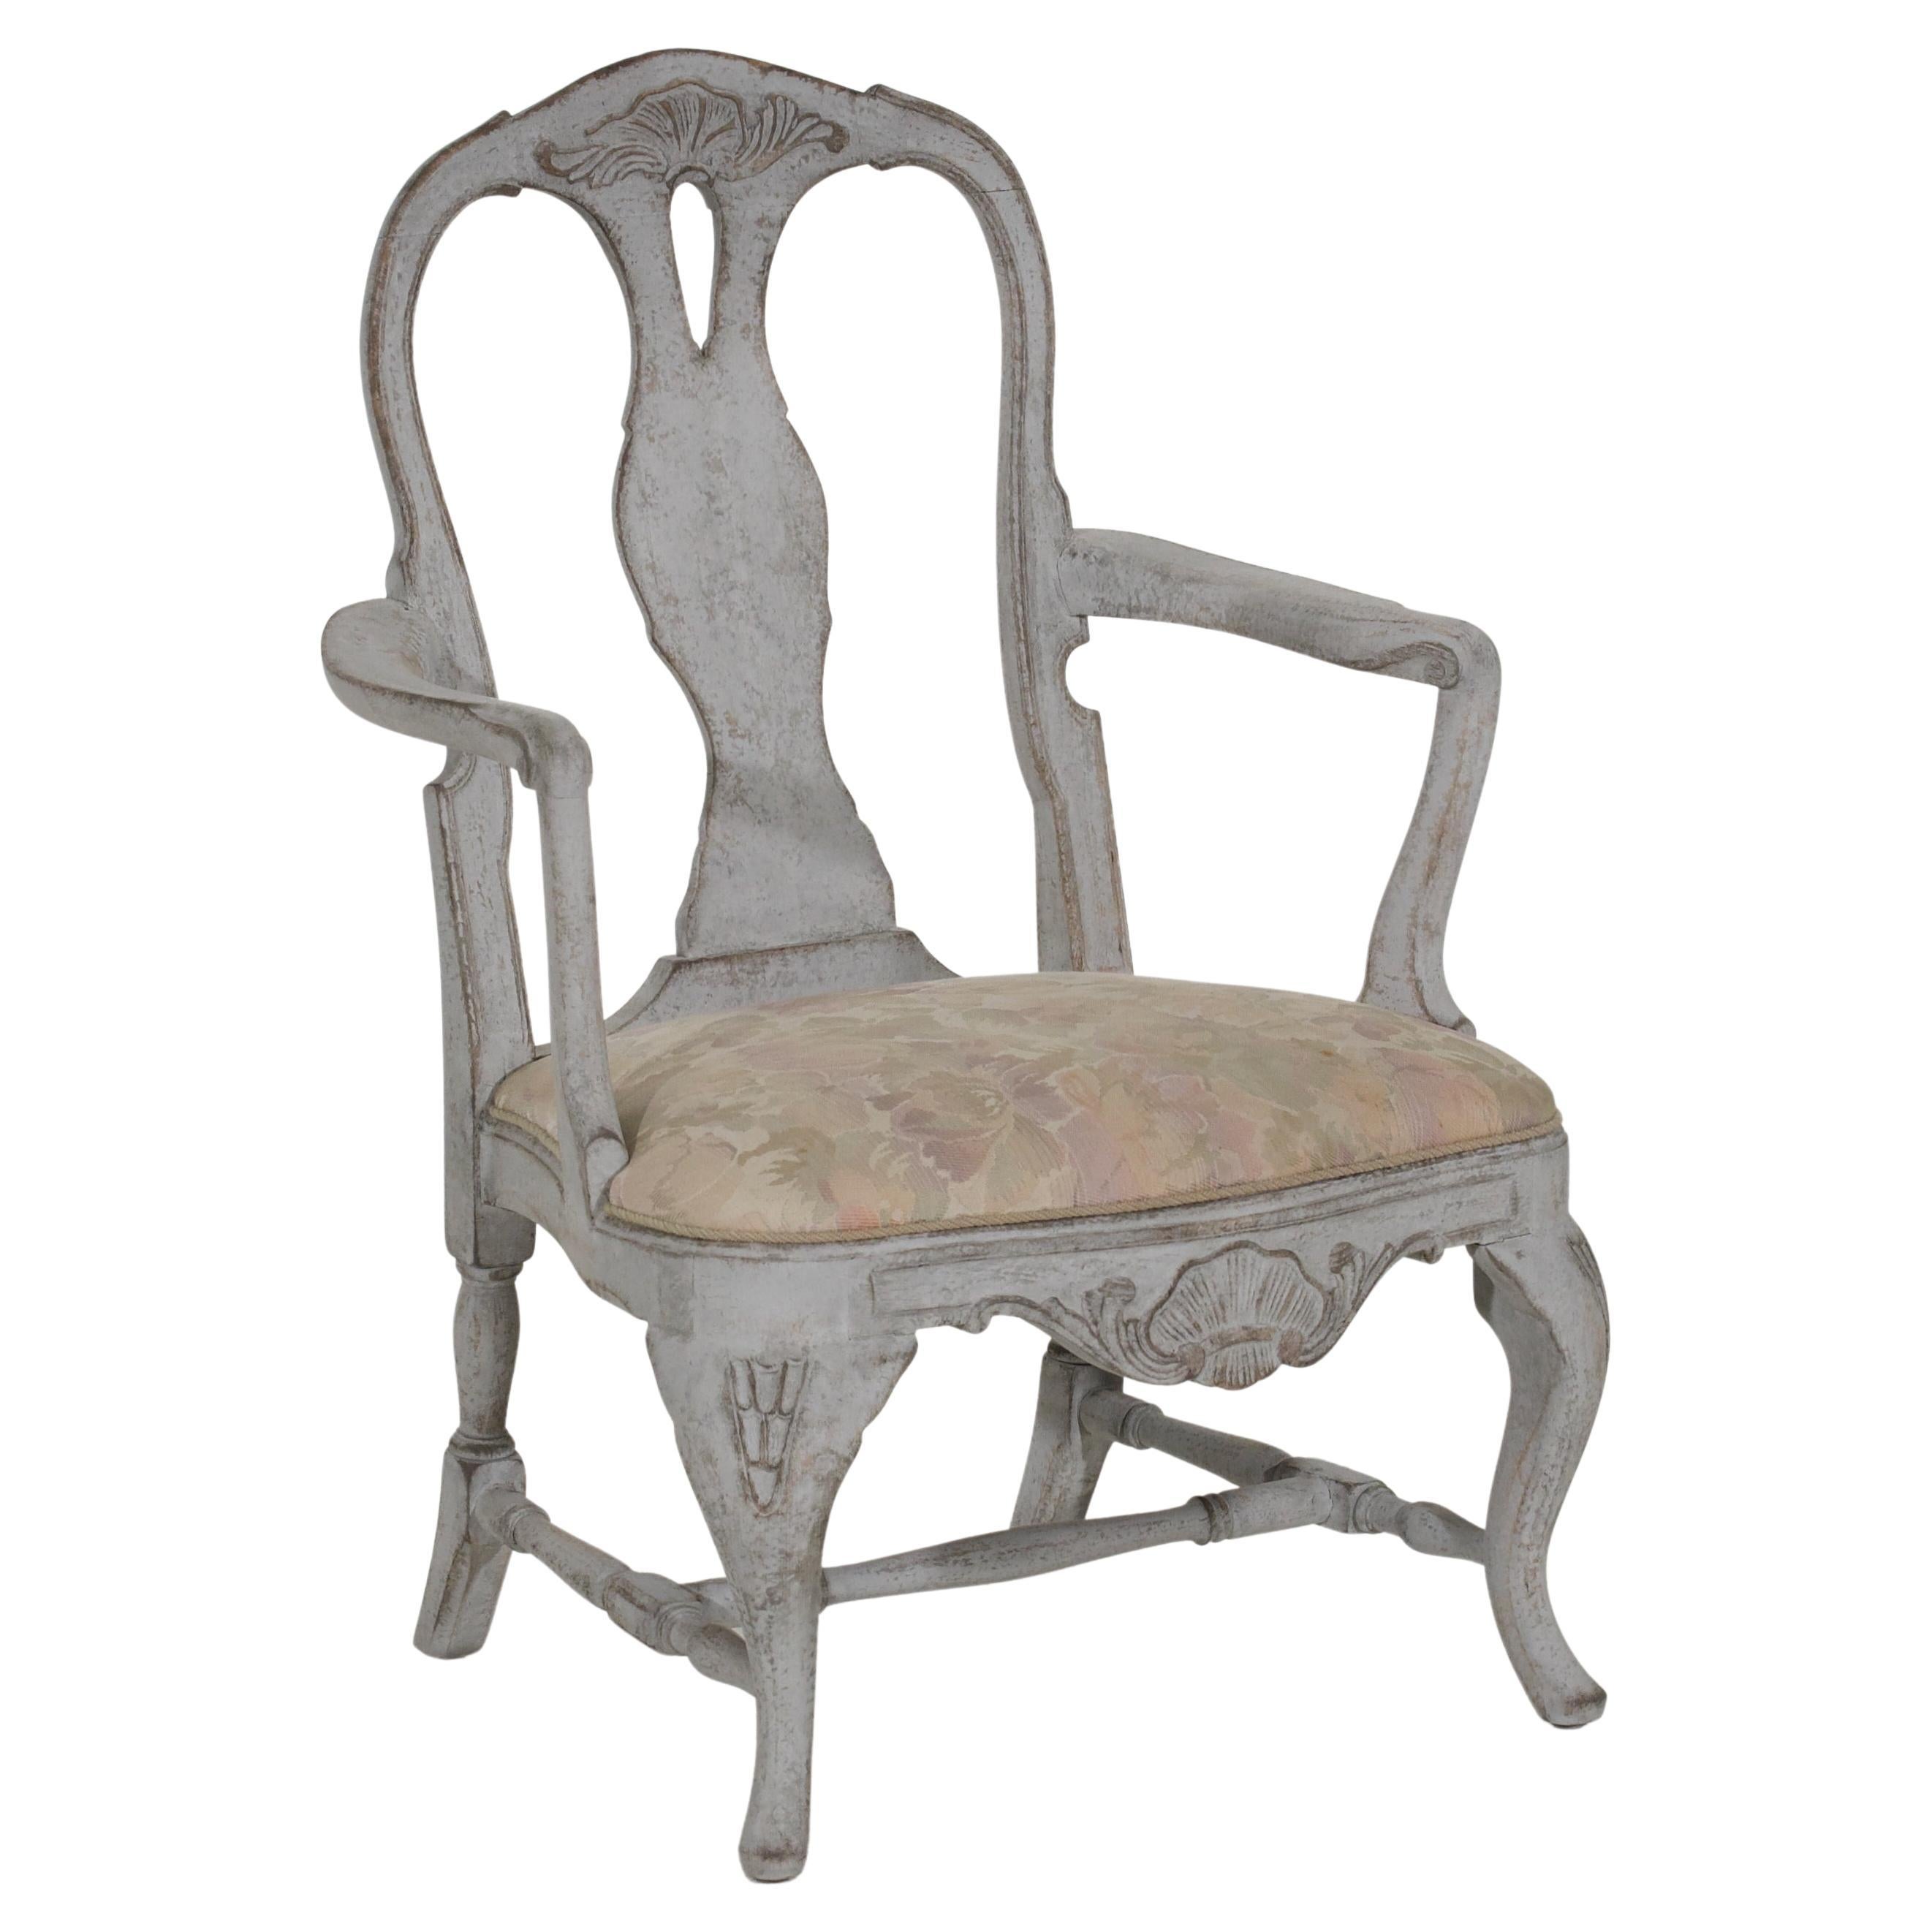 Ce fauteuil suédois du 19e siècle